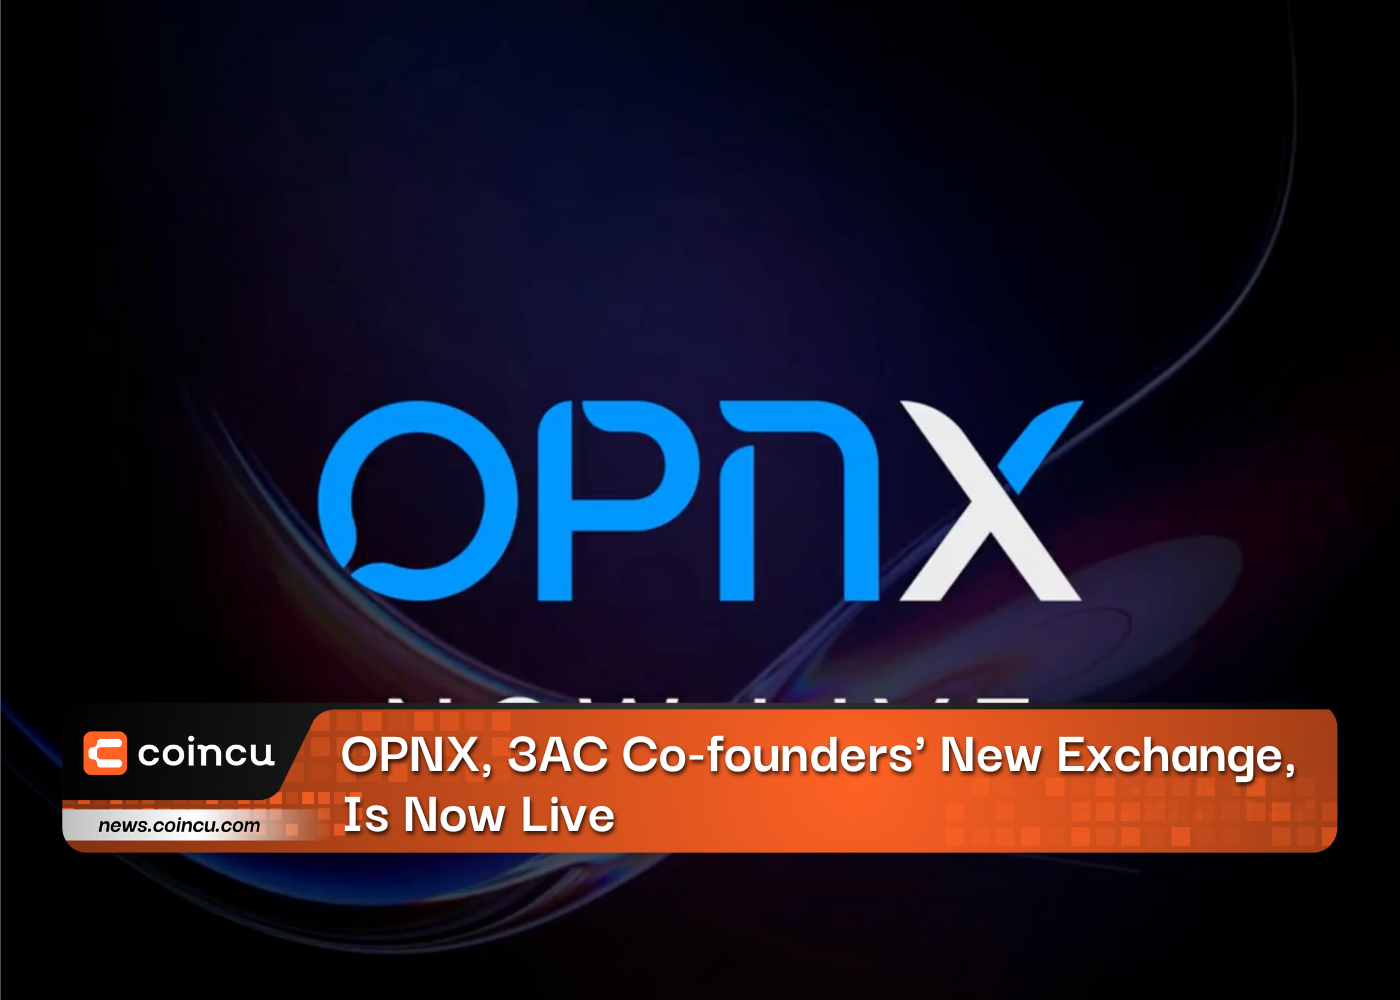 OPNX, новая биржа соучредителей 3AC, уже запущена